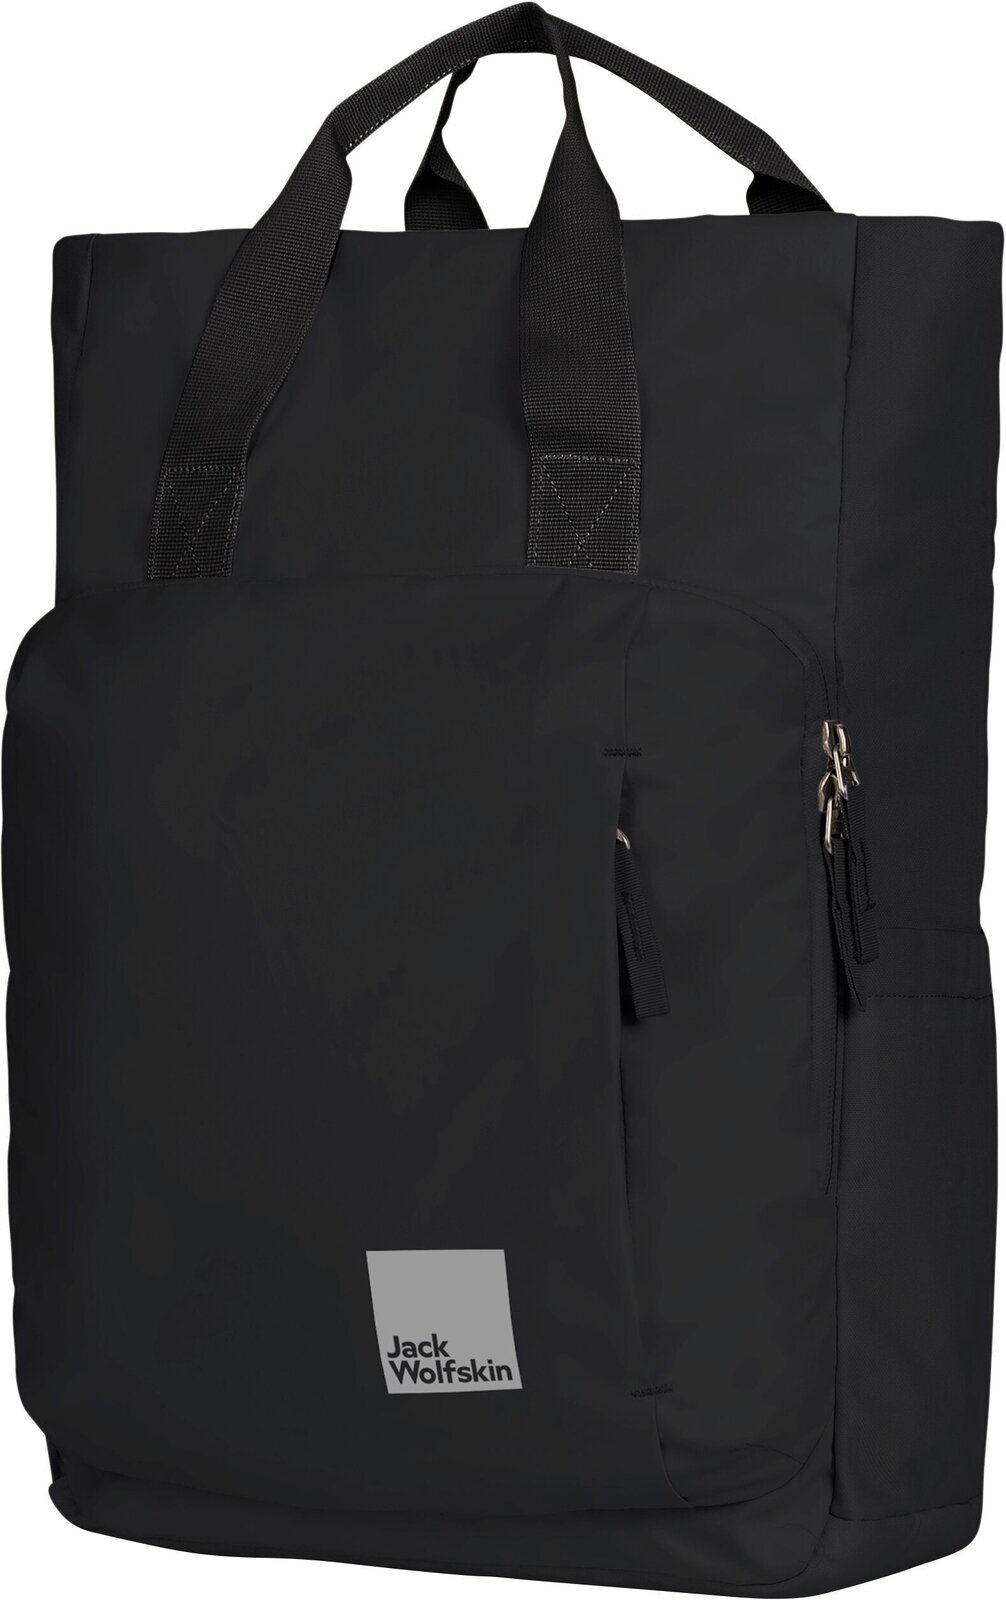 Lifestyle plecak / Torba Jack Wolfskin Hoellenberg Black Plecak